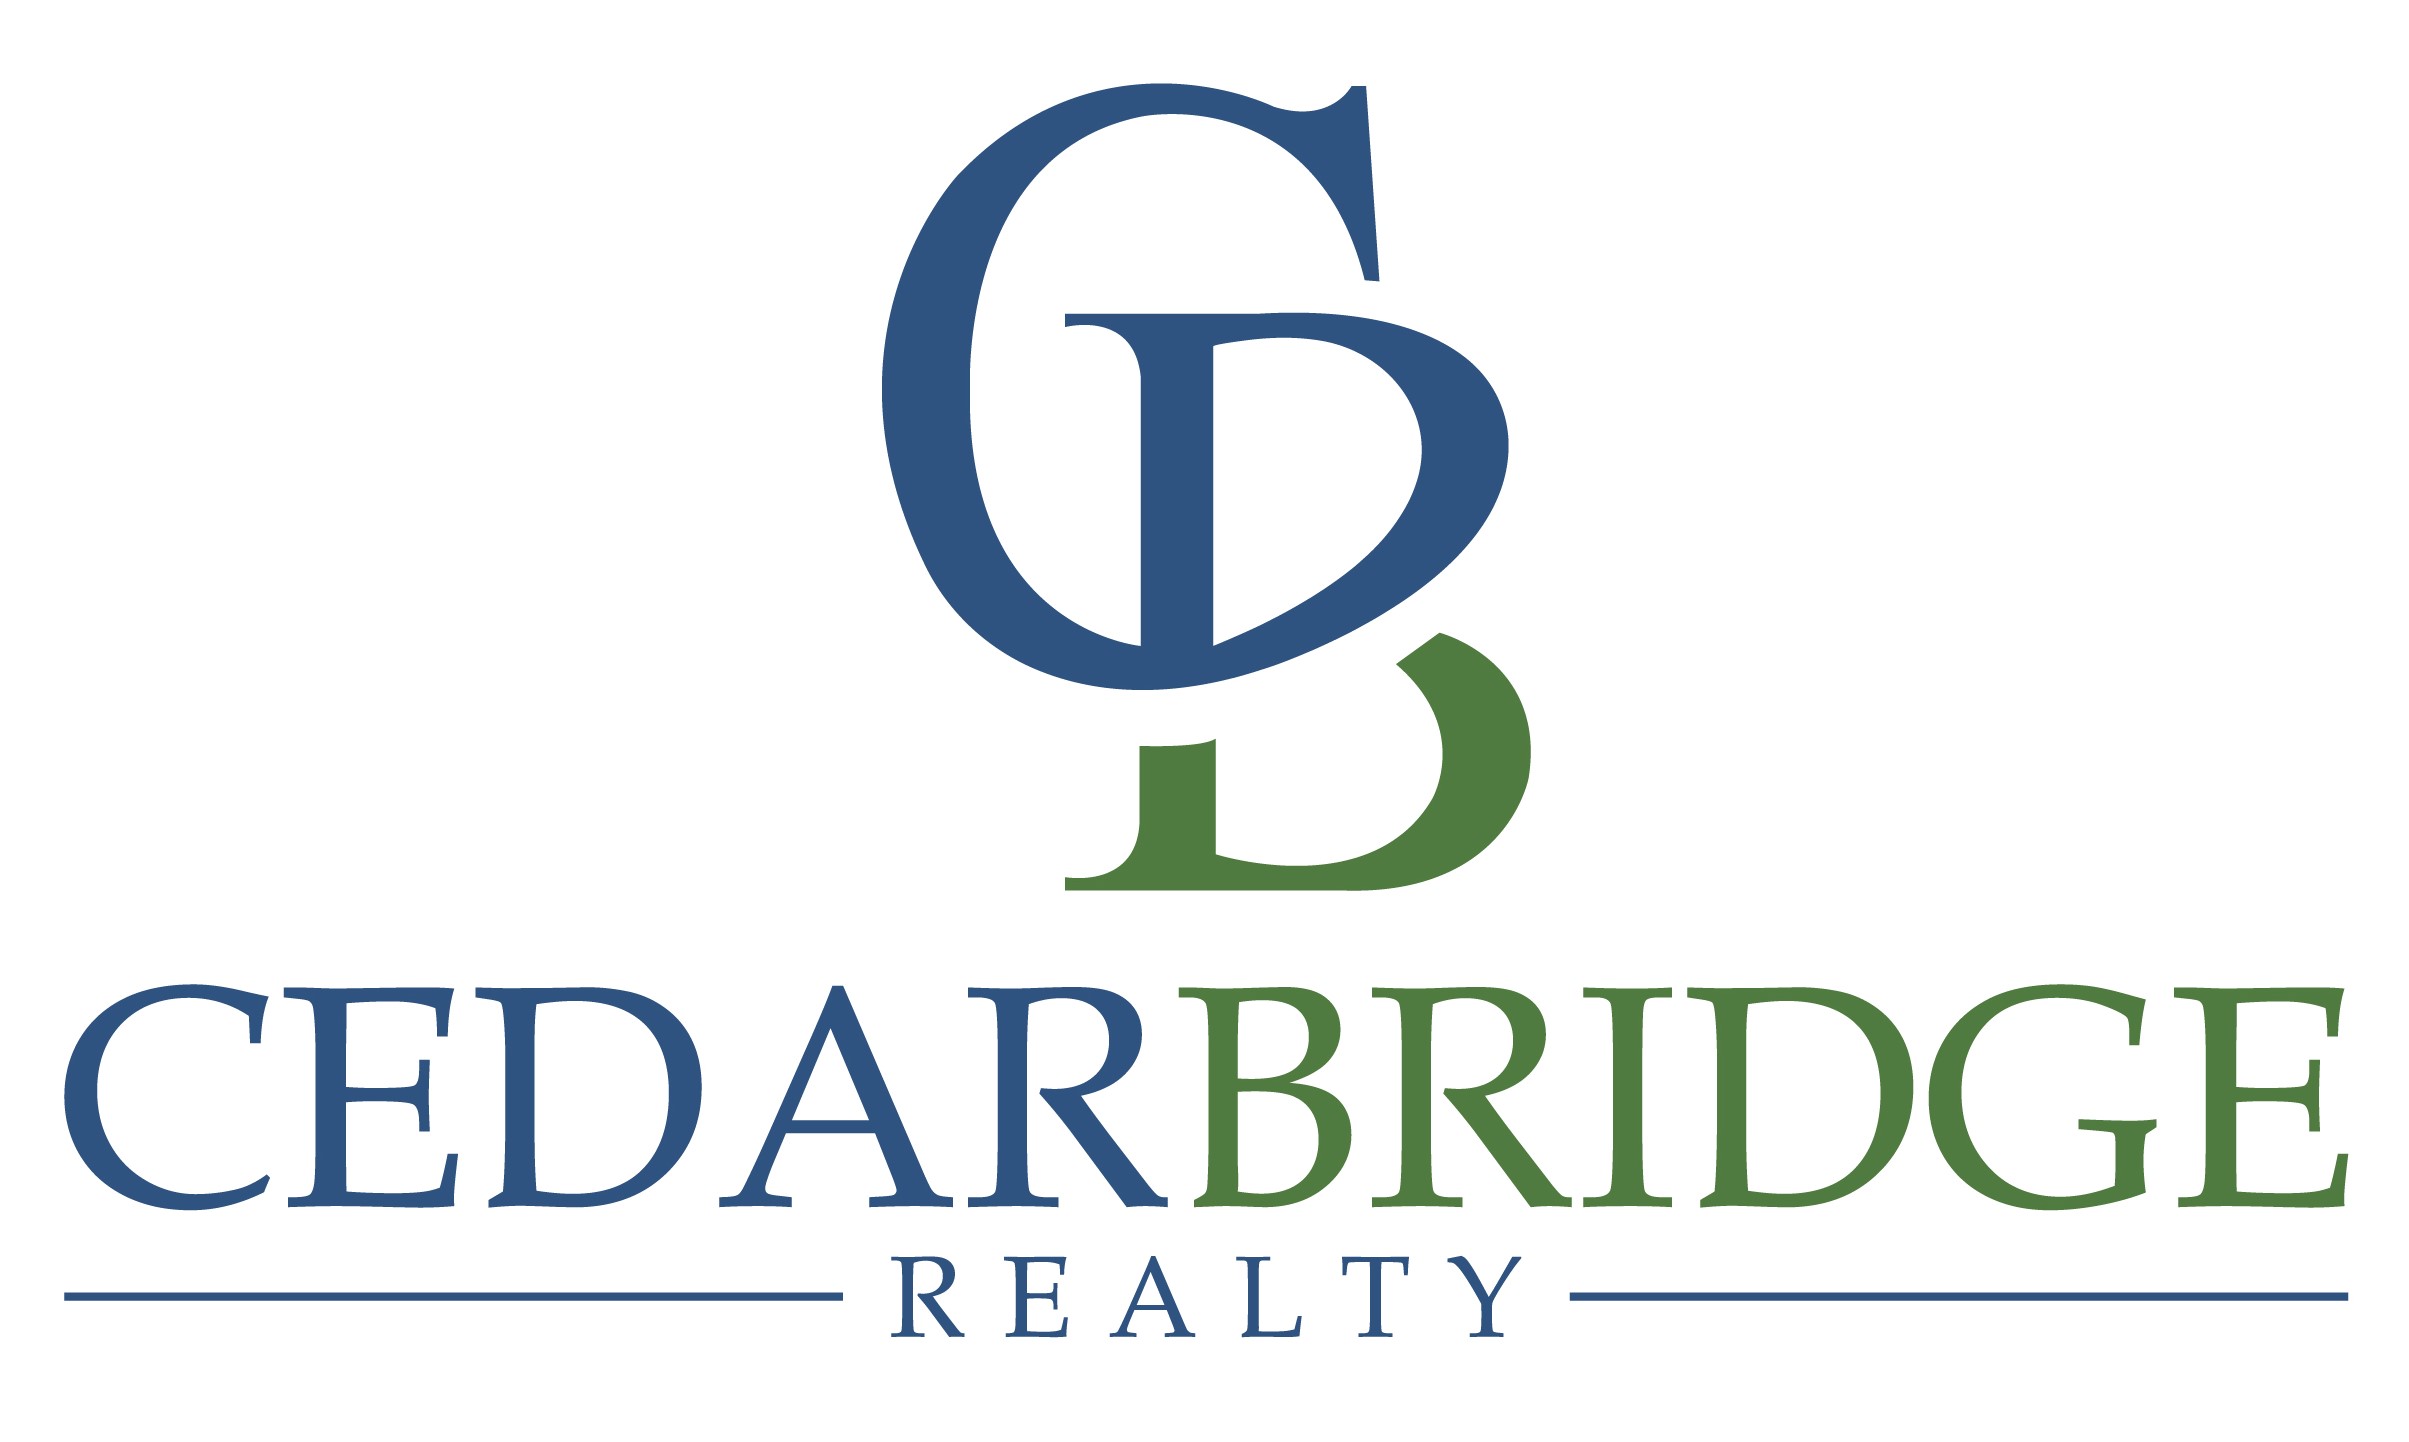 Cedarbridge Realty Inc.